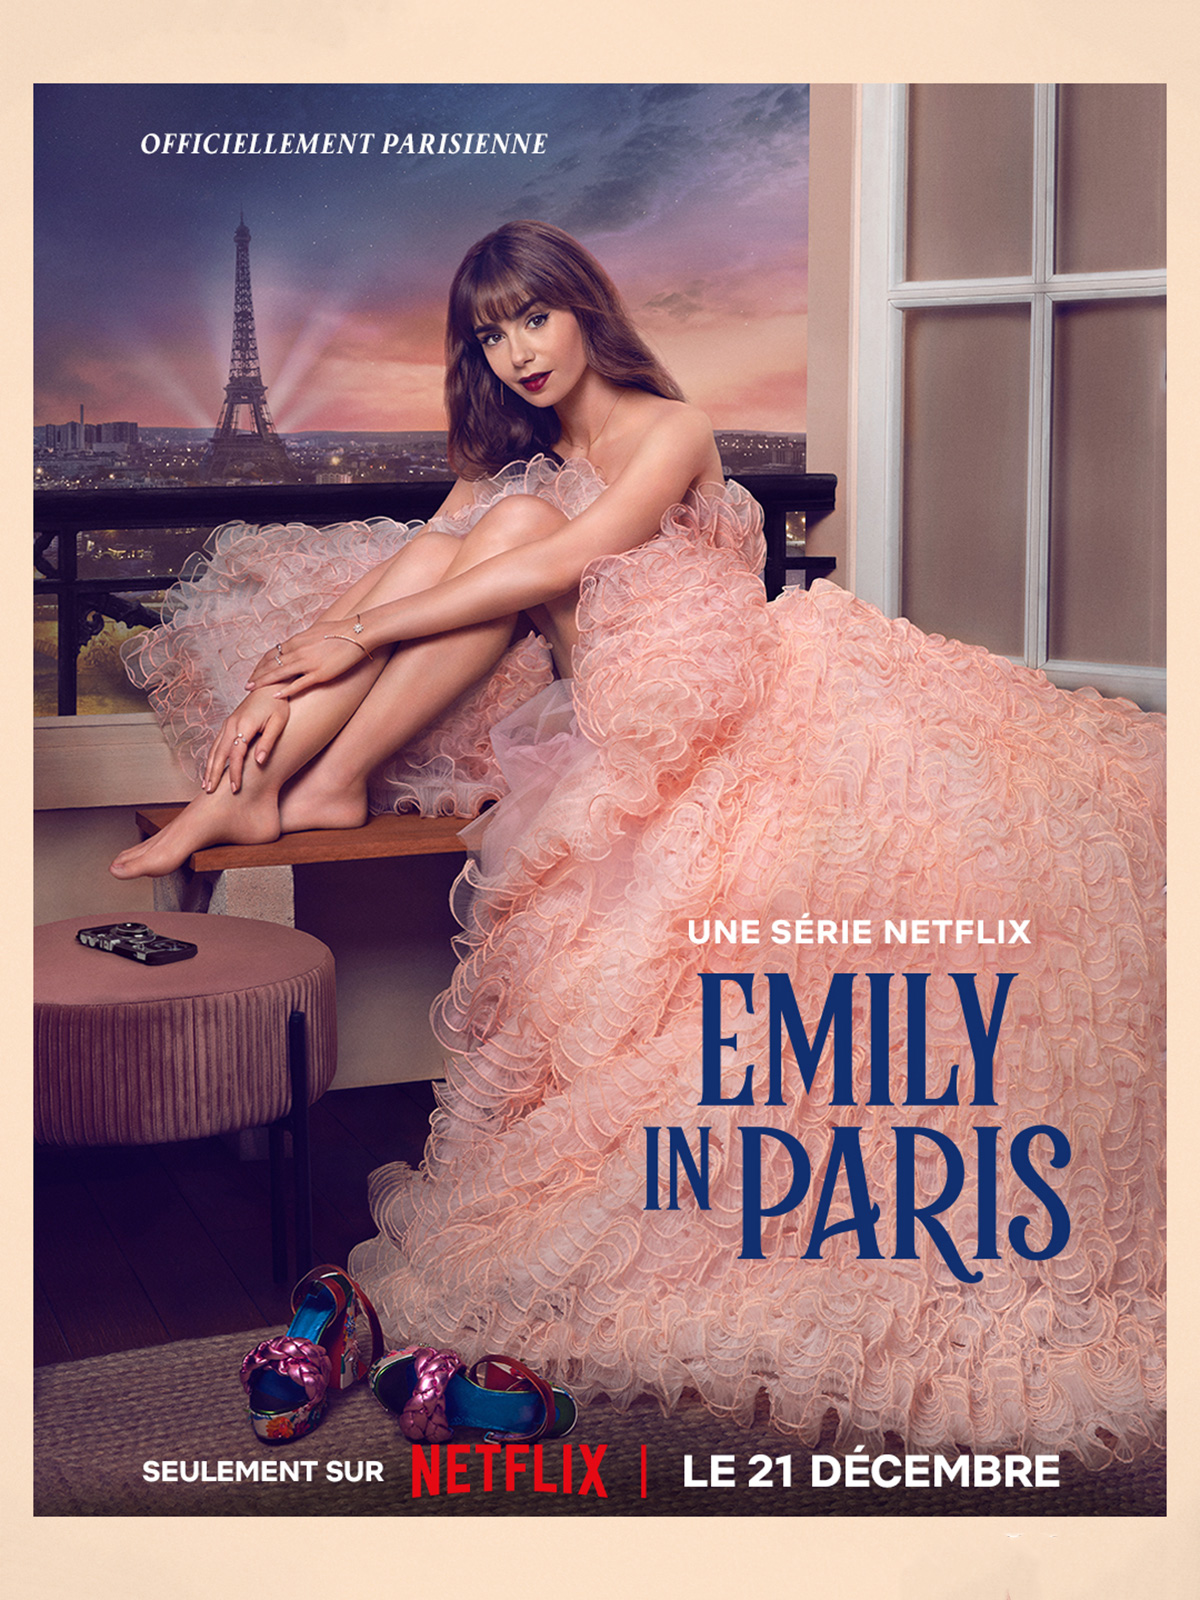 [心得] 艾蜜莉在巴黎 Emily in Paris S03 (雷) Netflix 文化喜劇